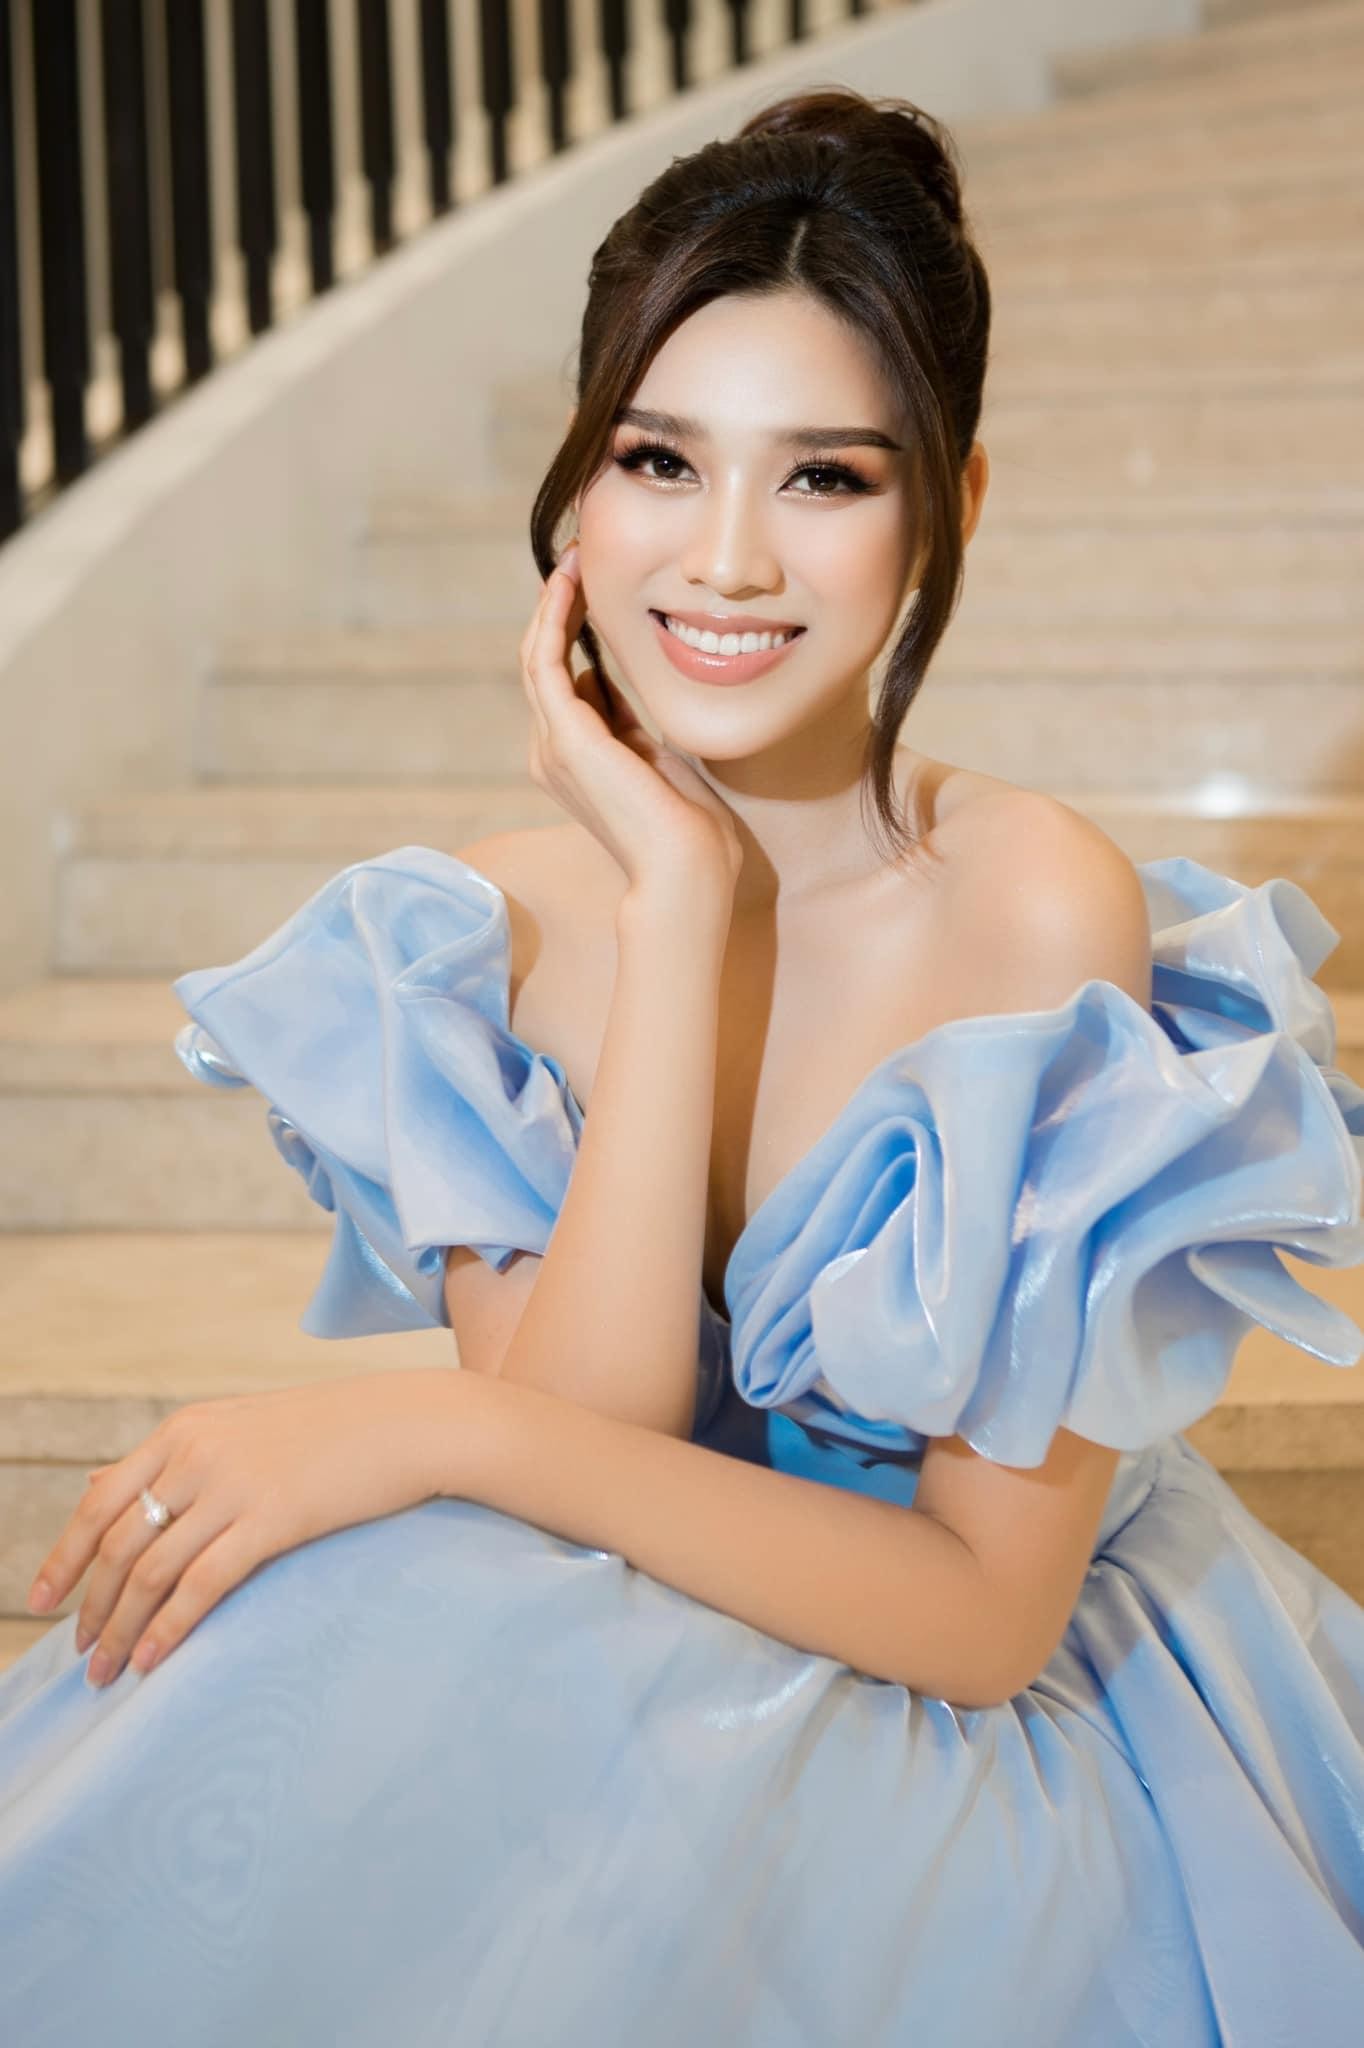 Dàn hậu Việt hoá thành công chúa Disney: Đỗ Thị Hà đẹp xuất thần, HHen Niê được khen giống bản gốc - Ảnh 3.